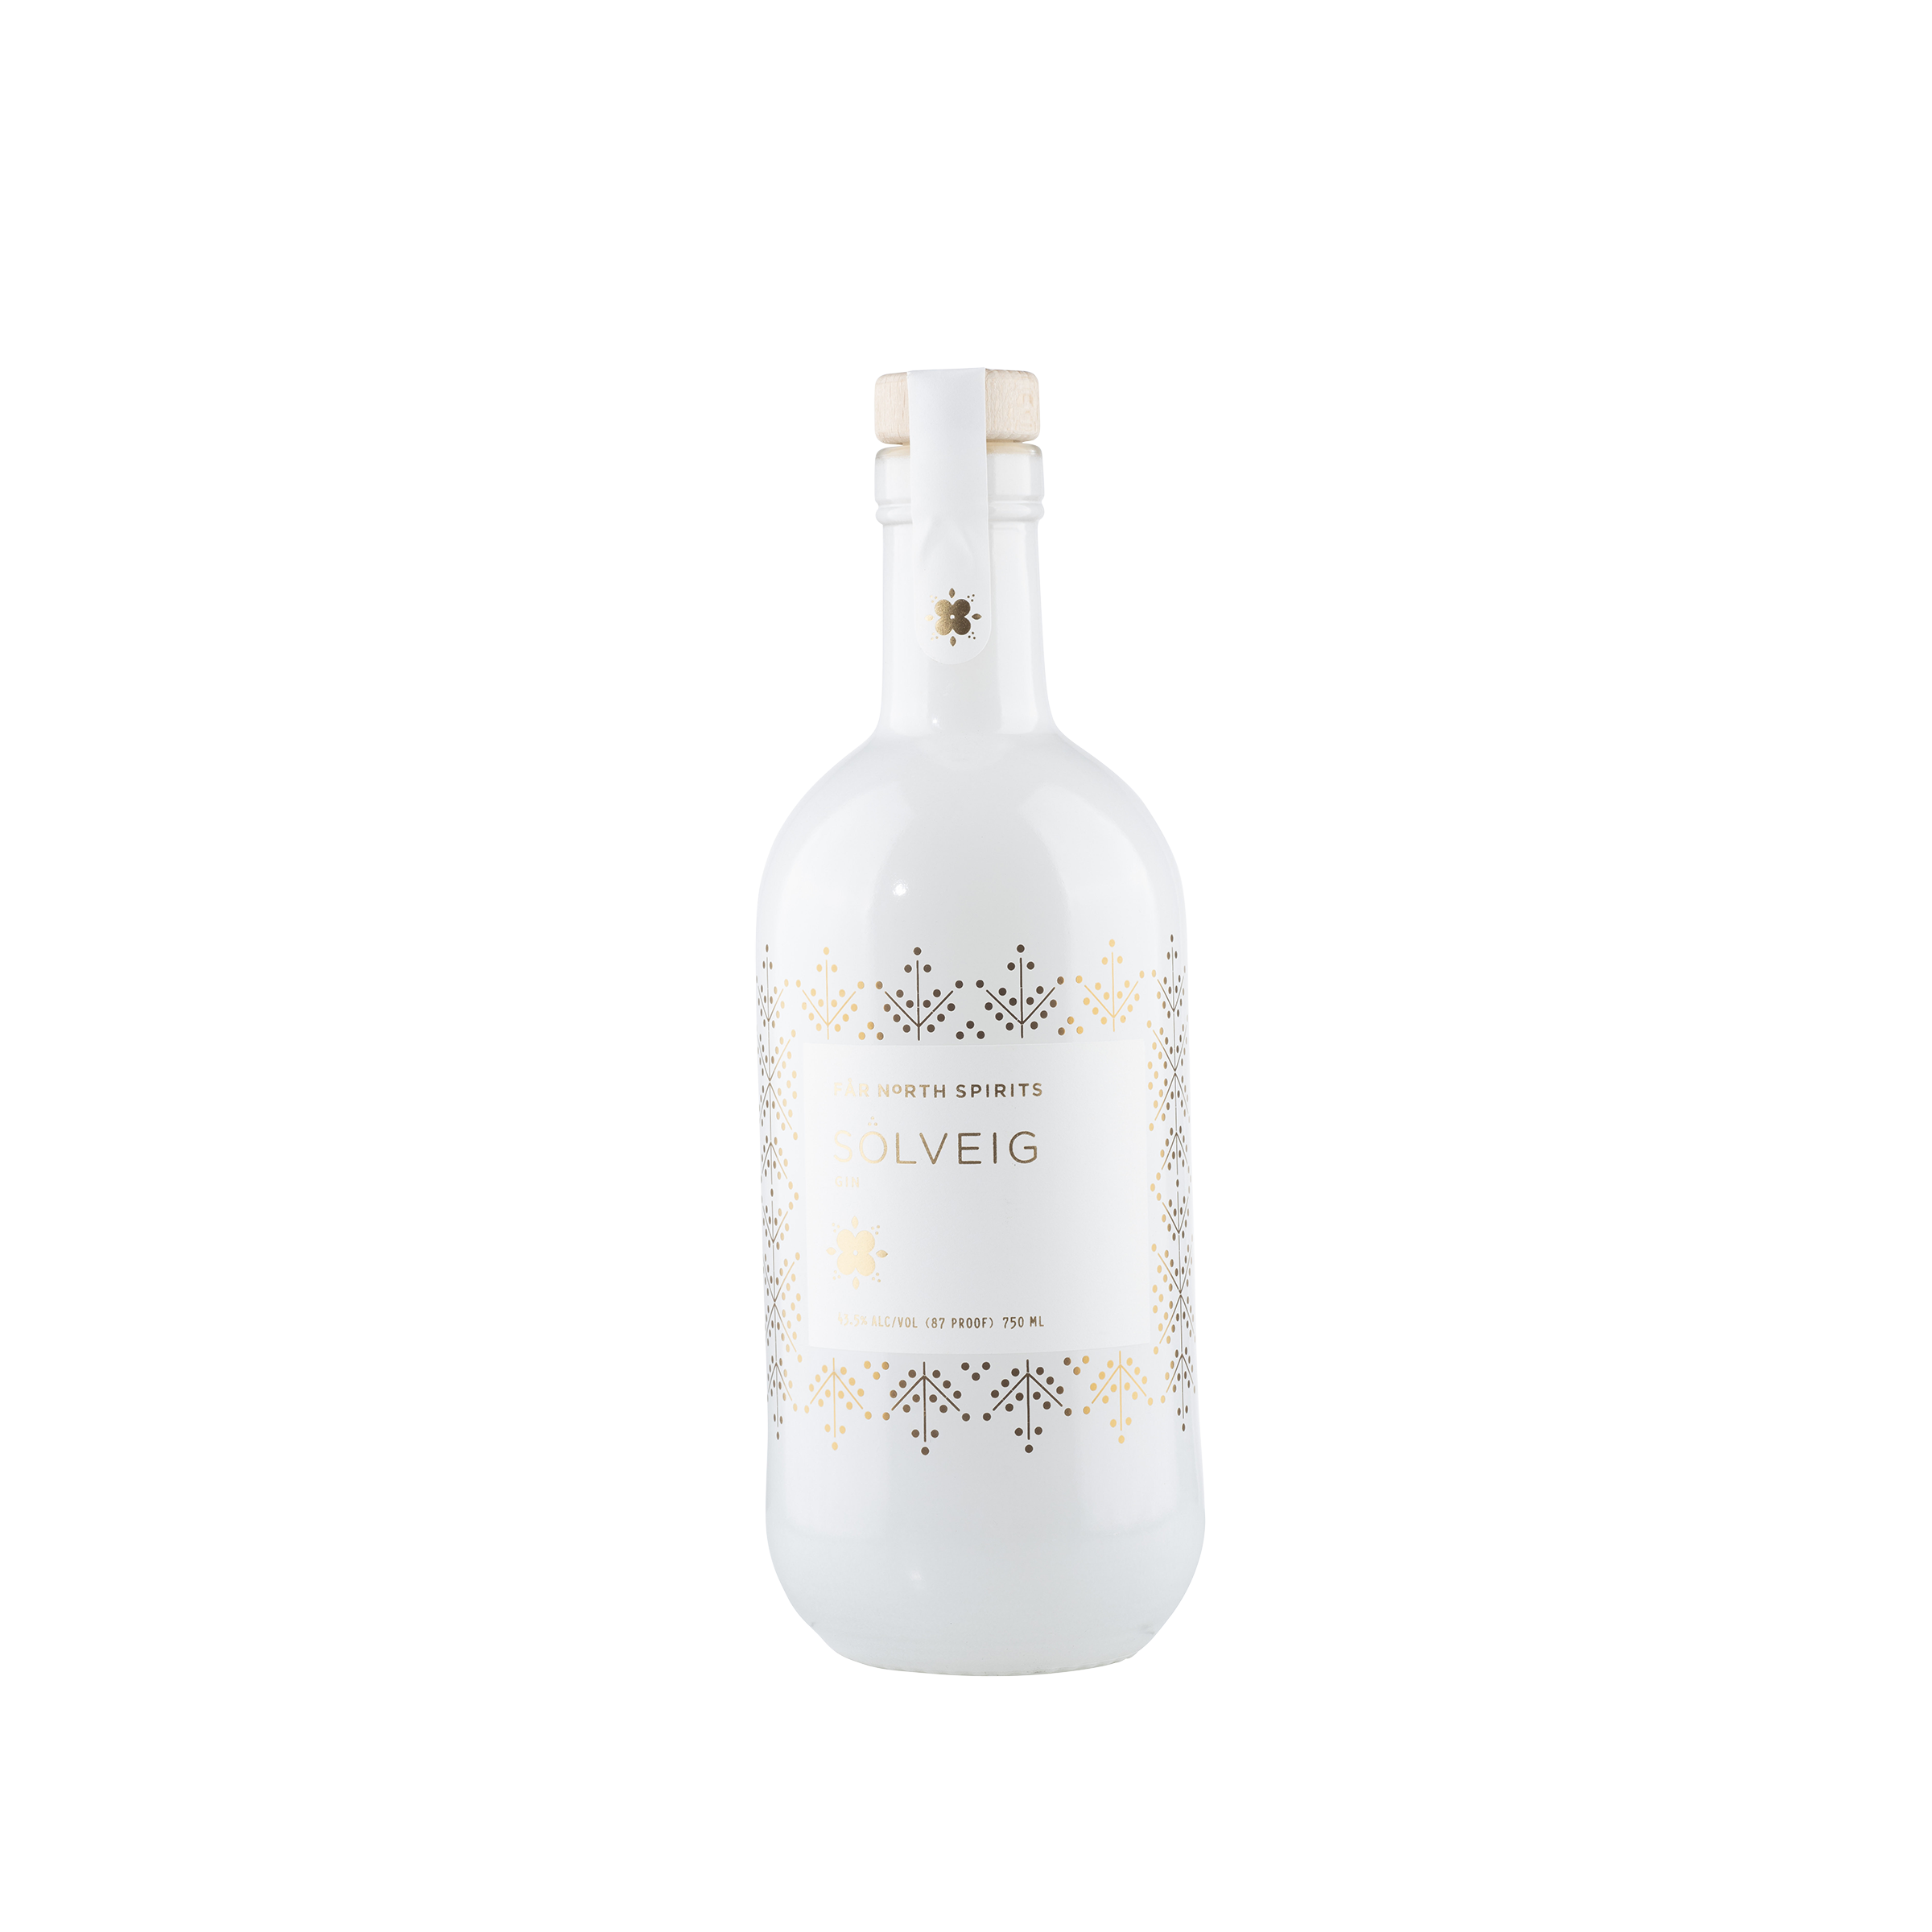 Spirits Solveig Gin NV Bottle Front